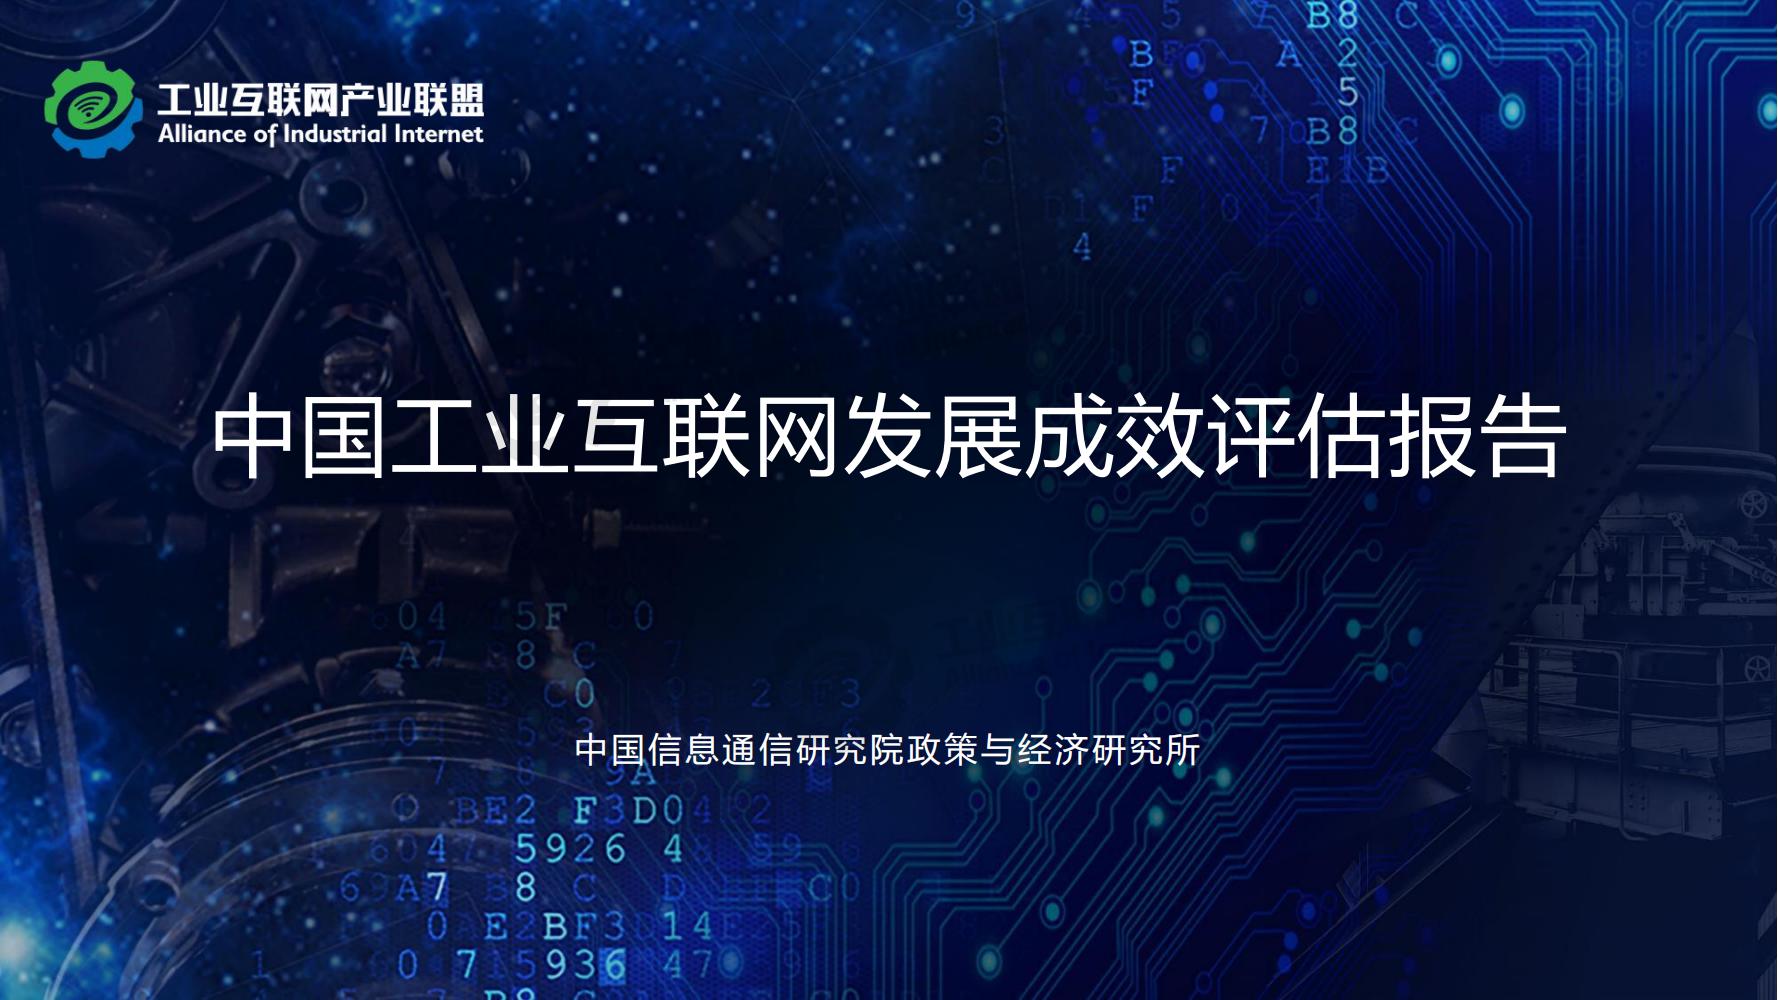 1-中国工业互联网发展成效评估报告-水印_01.jpg